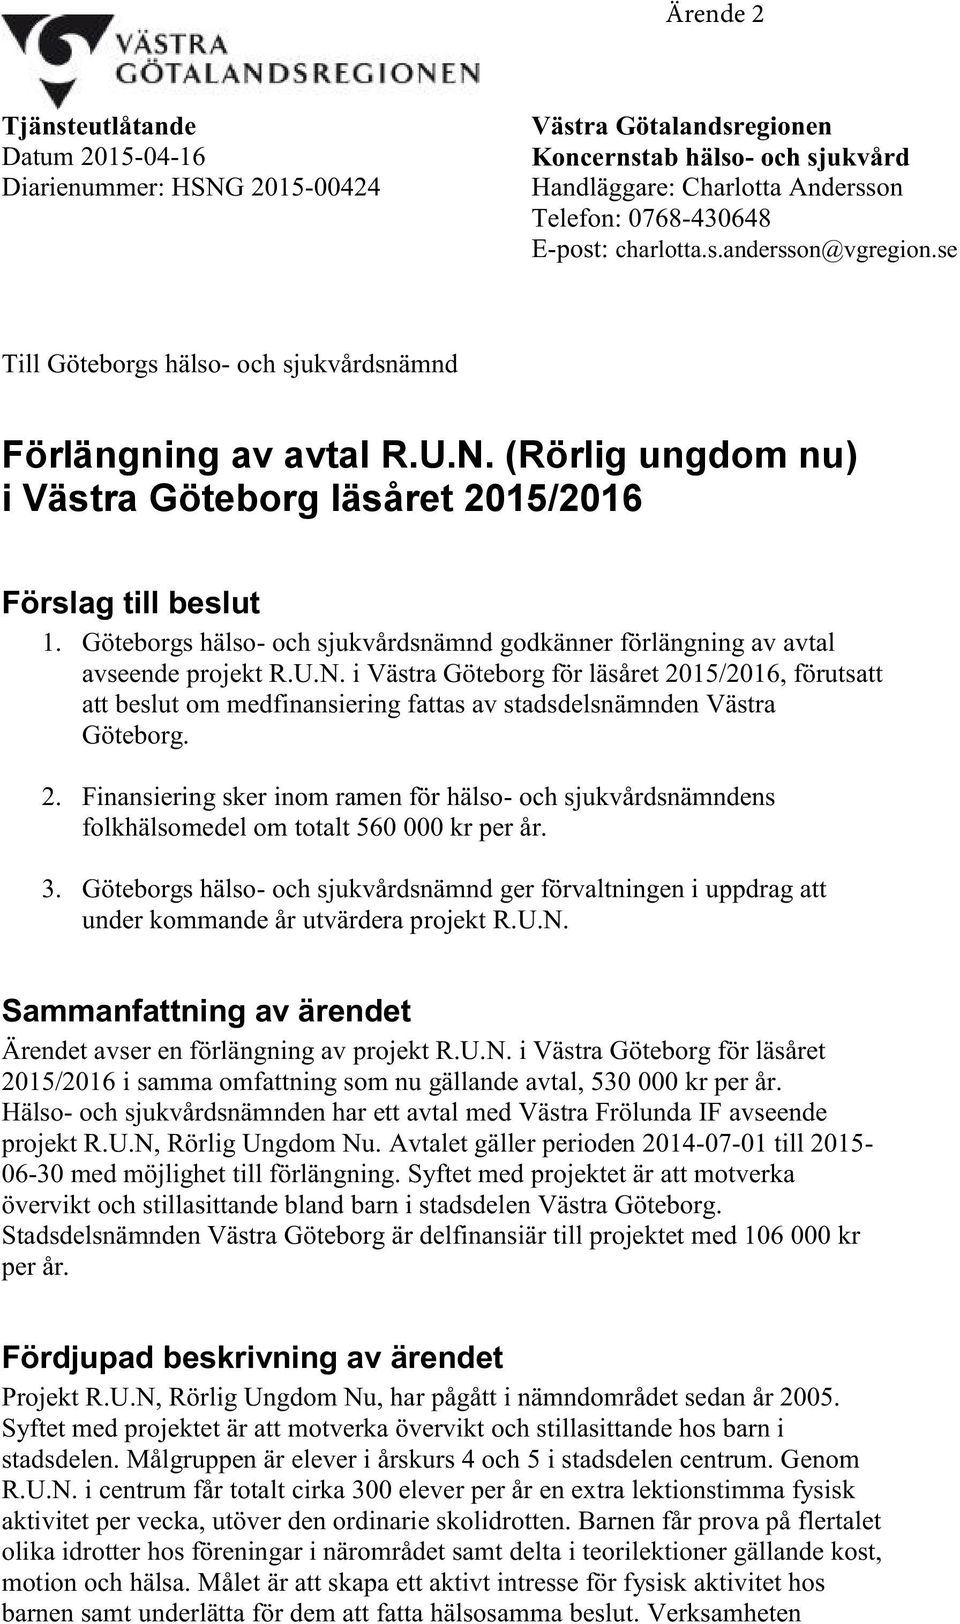 Göteborgs hälso- och sjukvårdsnämnd godkänner förlängning av avtal avseende projekt R.U.N.